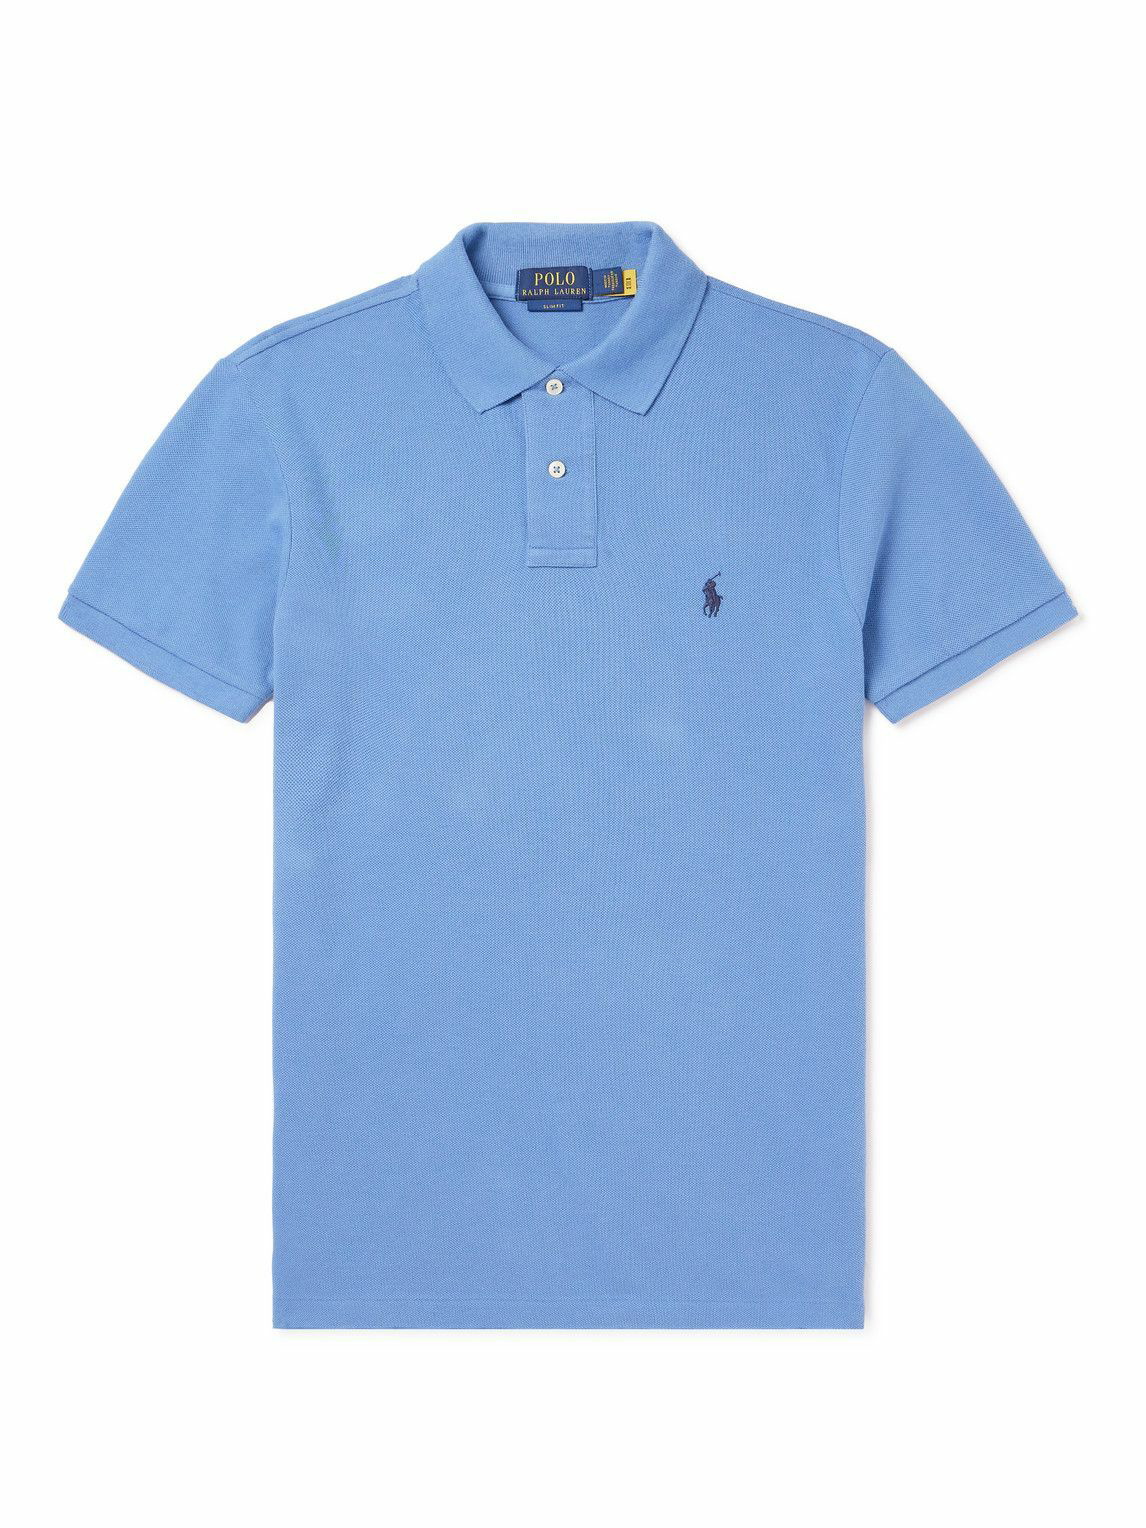 Polo Ralph Lauren - Cotton-Piqué Polo Shirt - Blue Polo Ralph Lauren